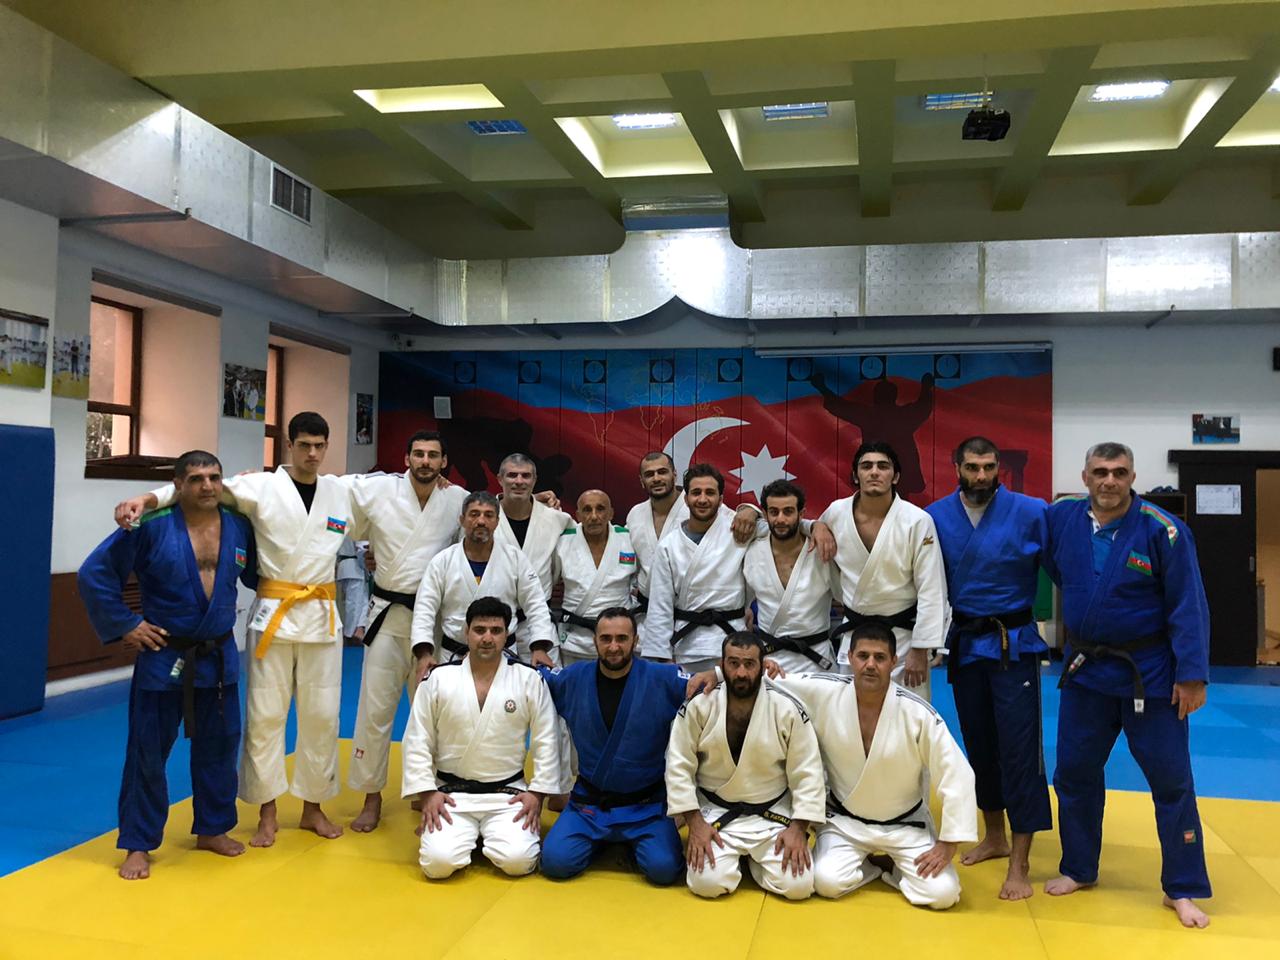 img/posts/yigma-komandanin-uzvleri-judo-club-2012de-olublar-2019-09-25-222451/0.jpg